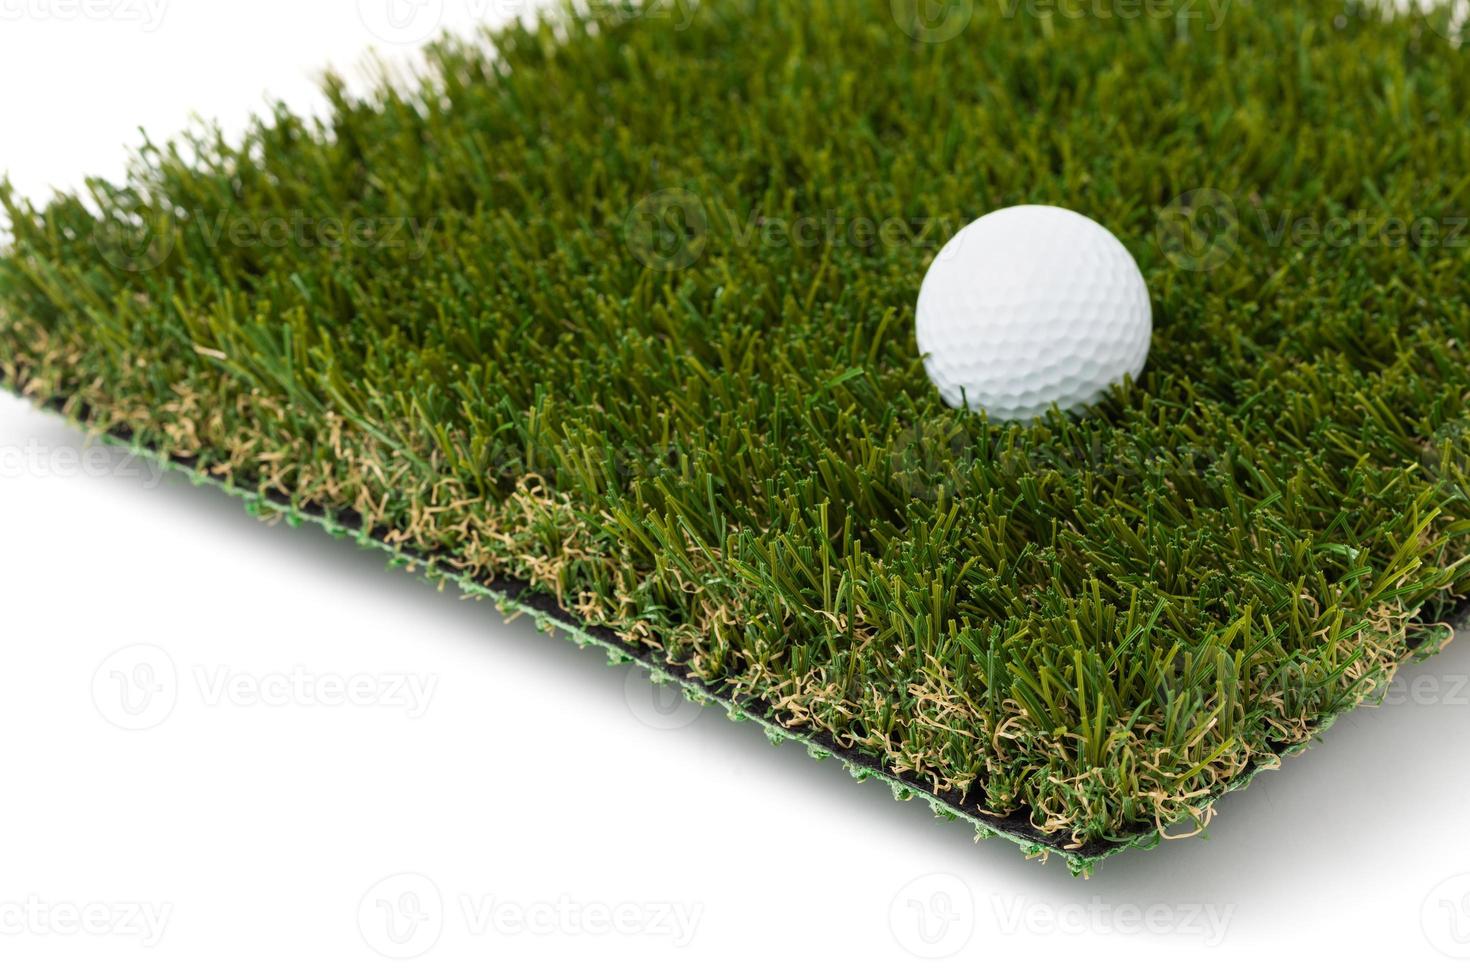 pelota de golf descansando sobre una sección de césped artificial sobre fondo blanco foto